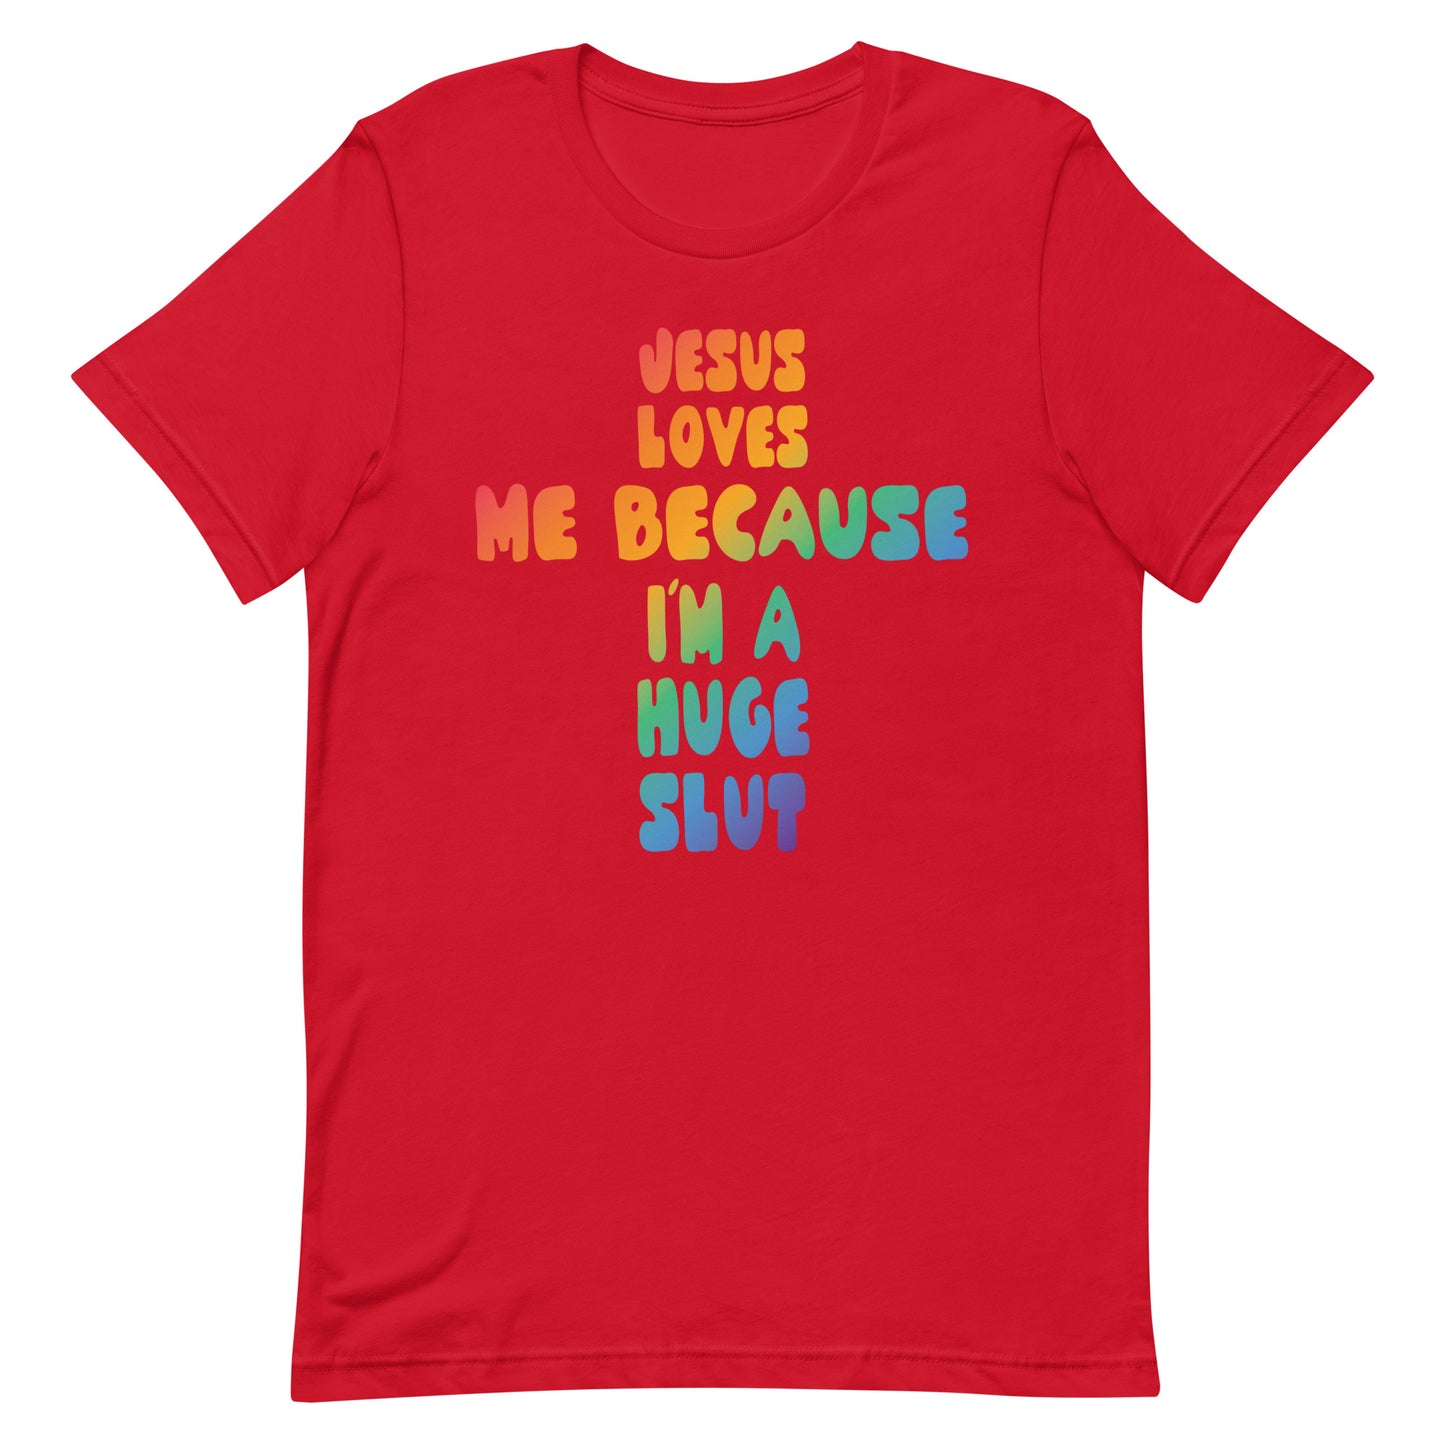 Jesus Loves Me Because I'm a Huge Slut Unisex t-shirt